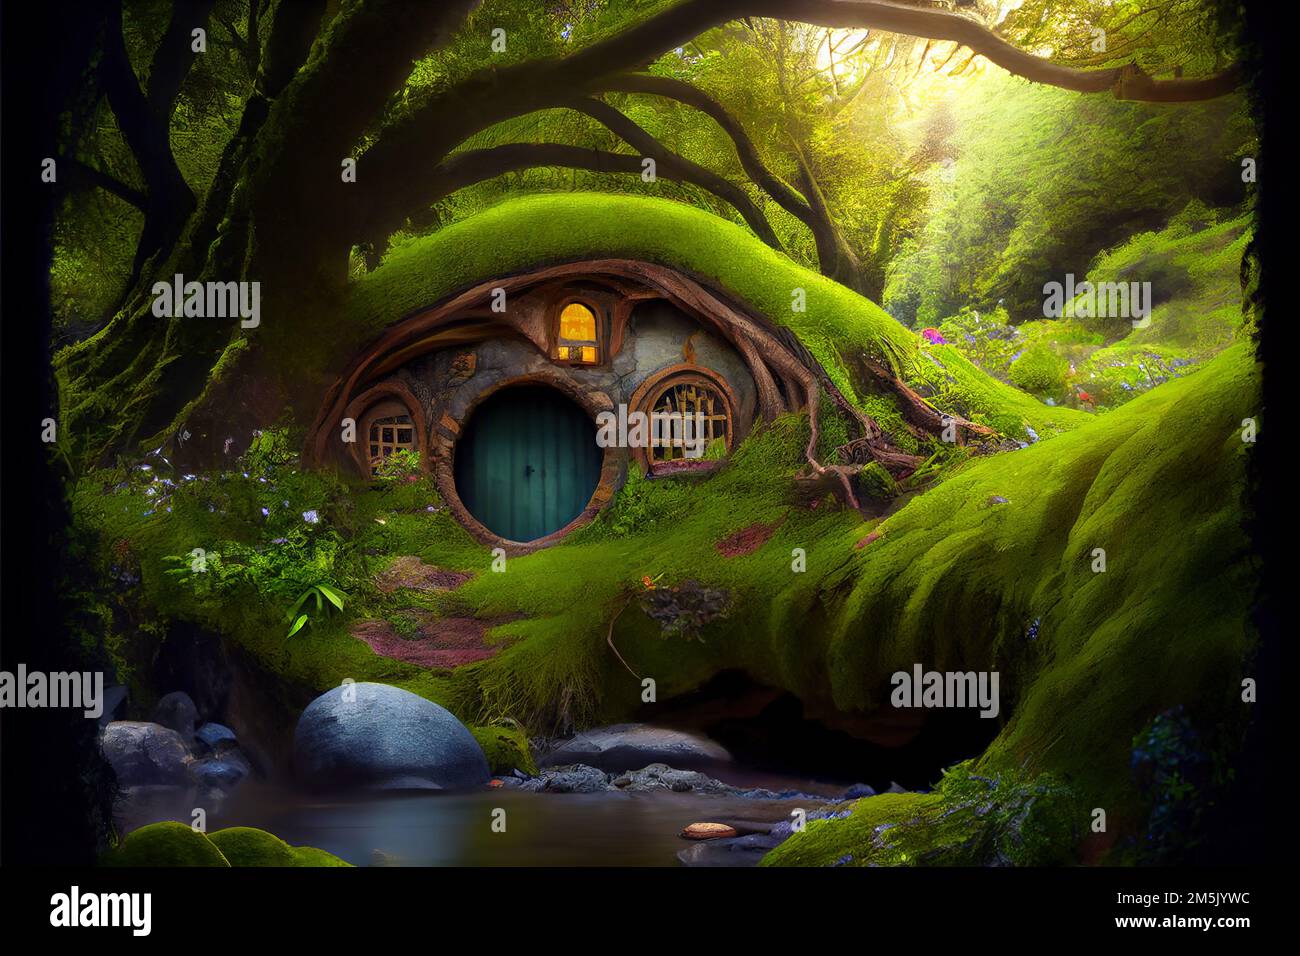 Casa Hobbit en el bosque de fantasía. Casa de cuento de hadas cubierta de hierba verde en madera mágica. Paisaje con habitación de cuento de hadas y árboles en suma Foto de stock